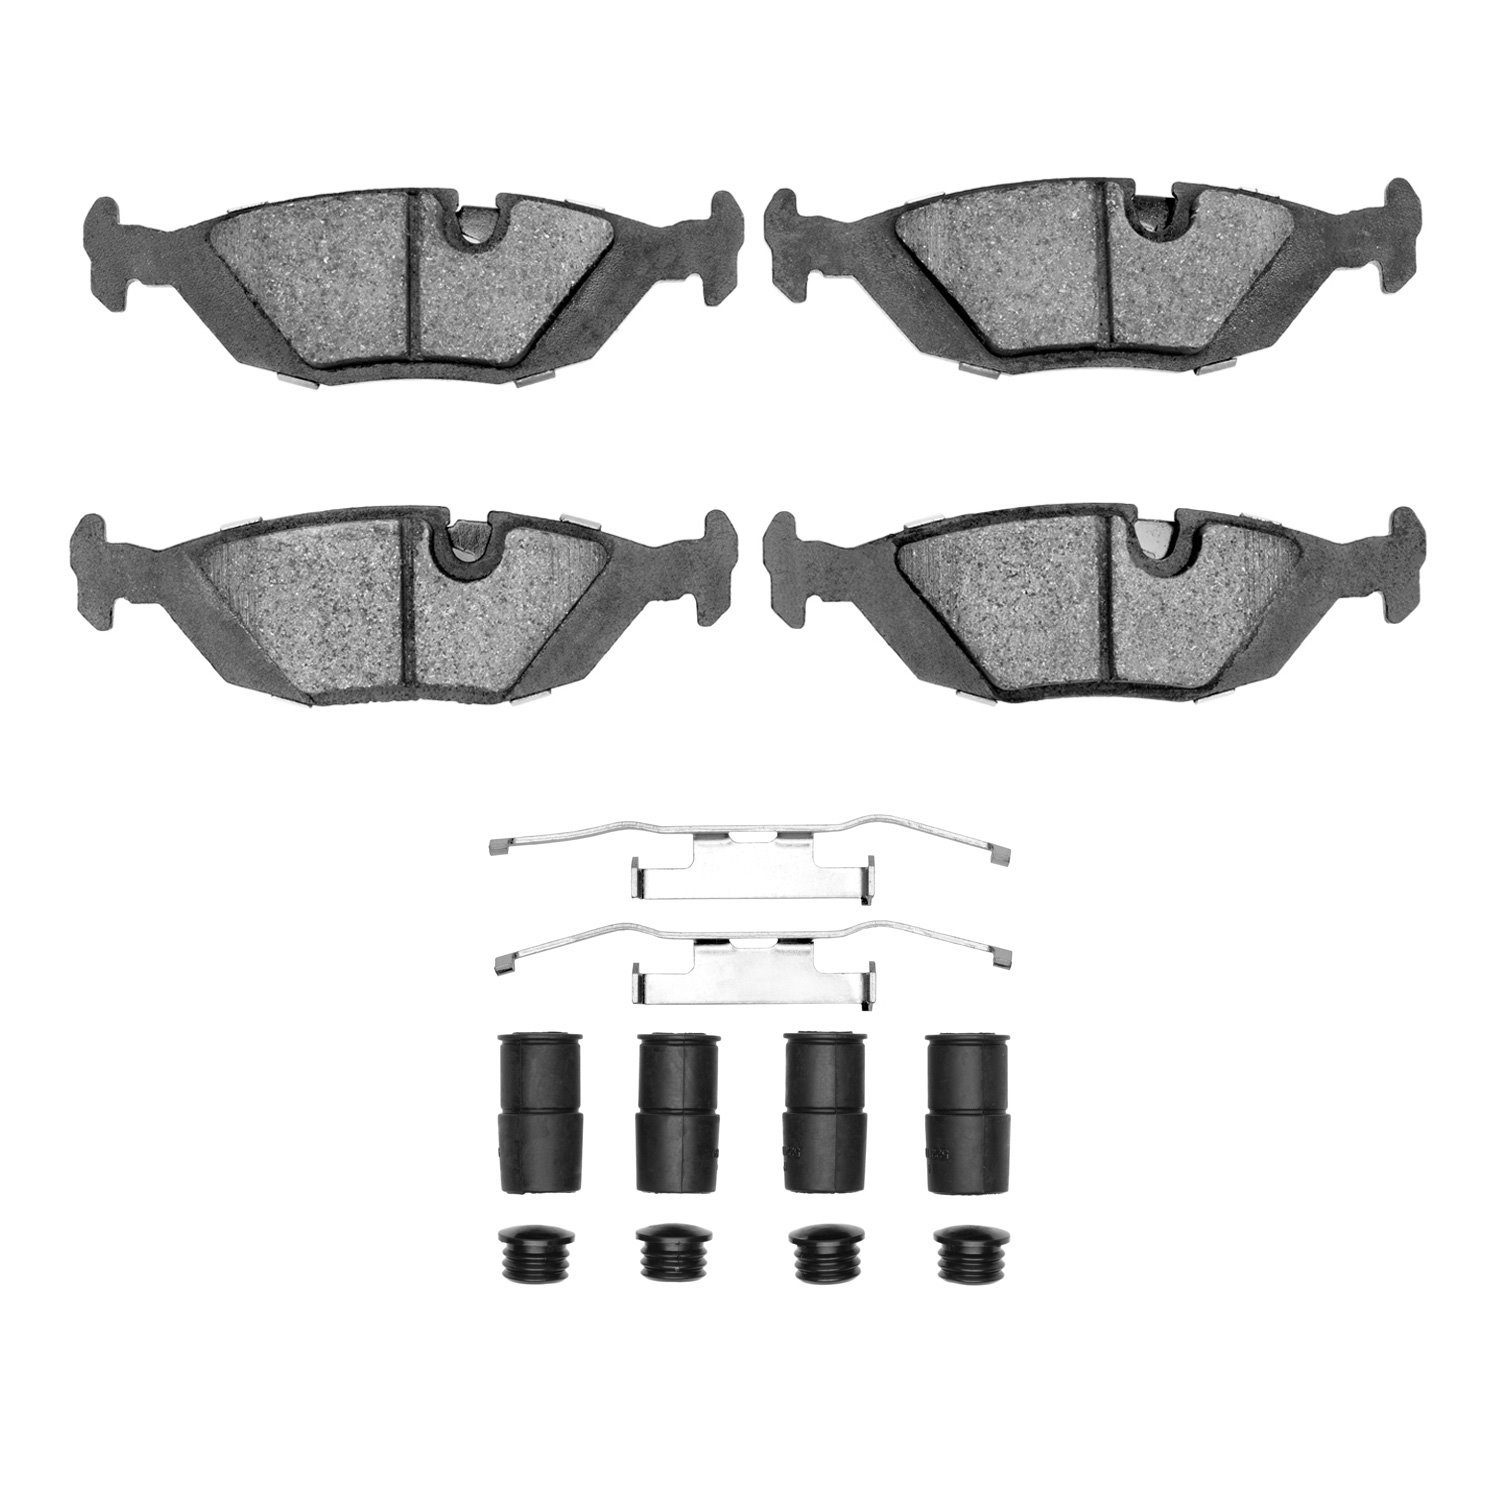 1600-0279-01 5000 Euro Ceramic Brake Pads & Hardware Kit, 1981-1991 BMW, Position: Rear